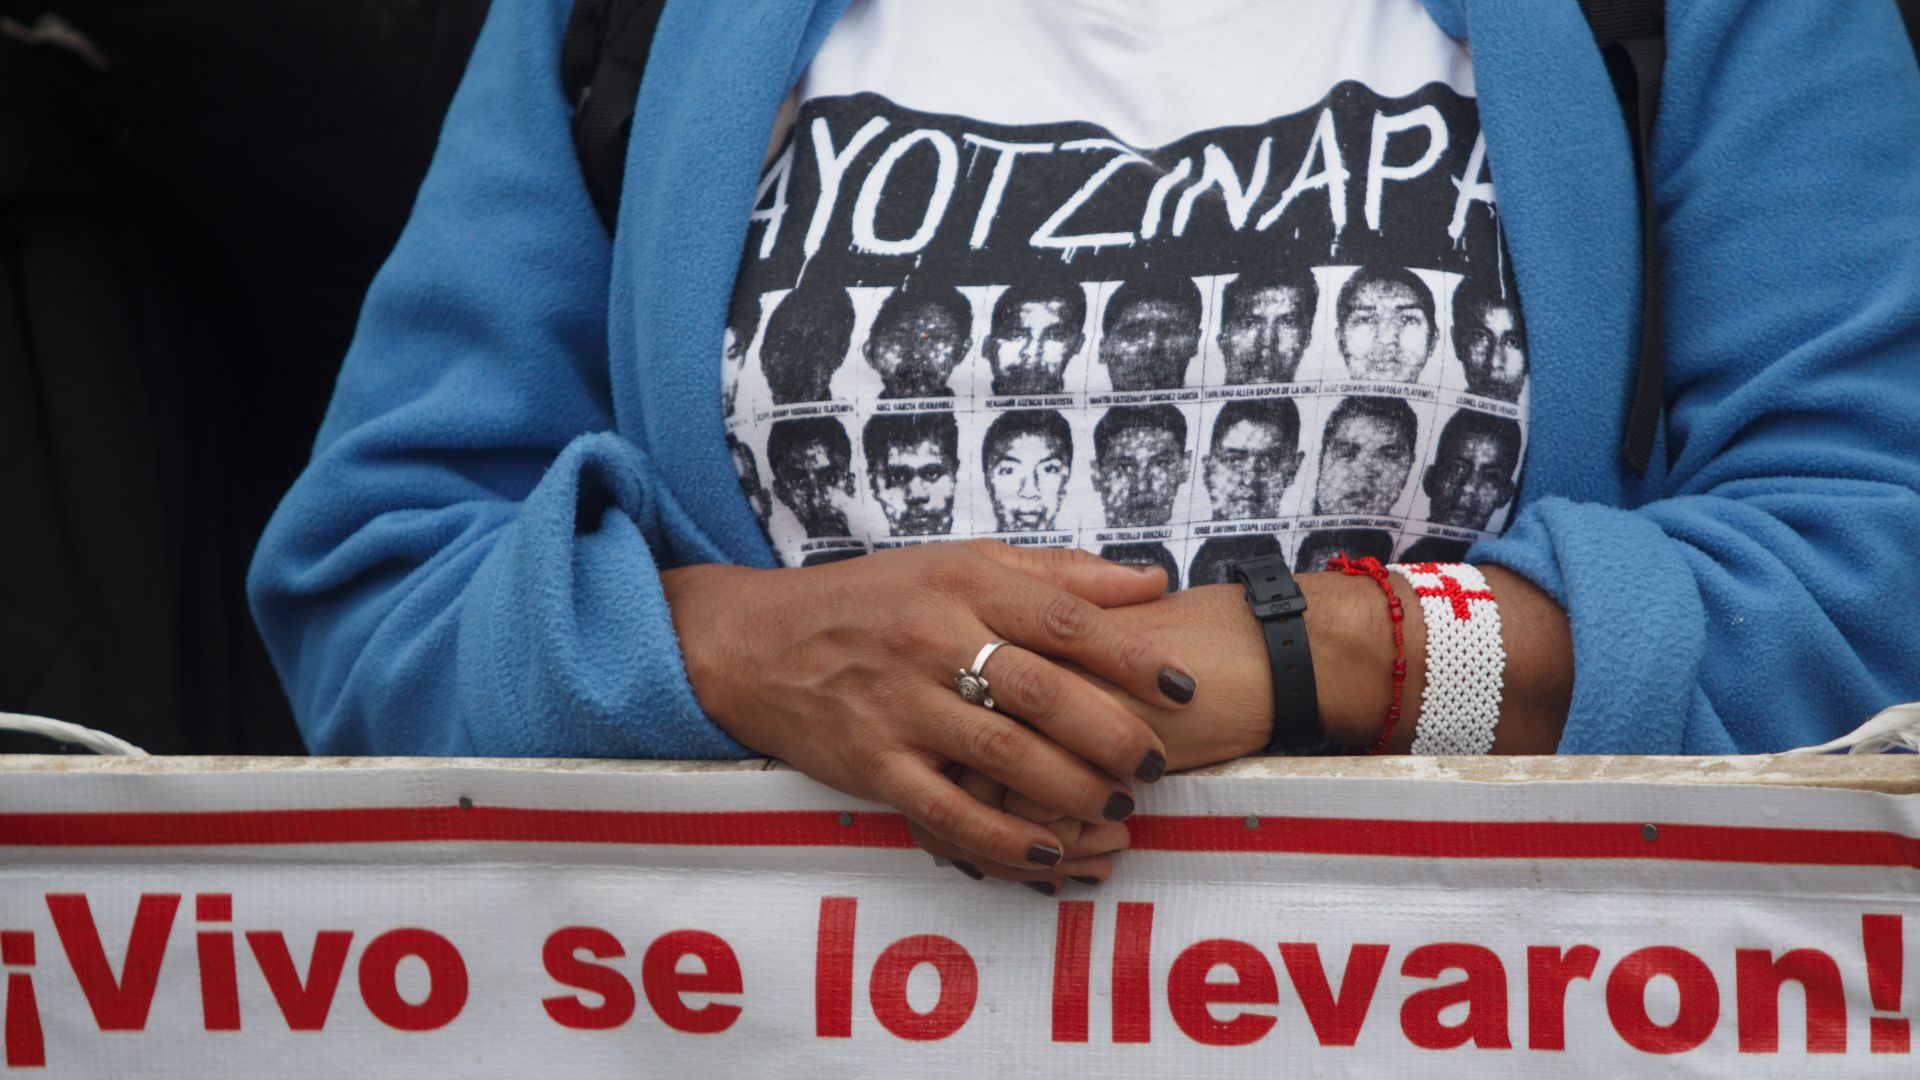 Las razones que tienen al caso Ayotzinapa “empantanado”, según Loret de Mola